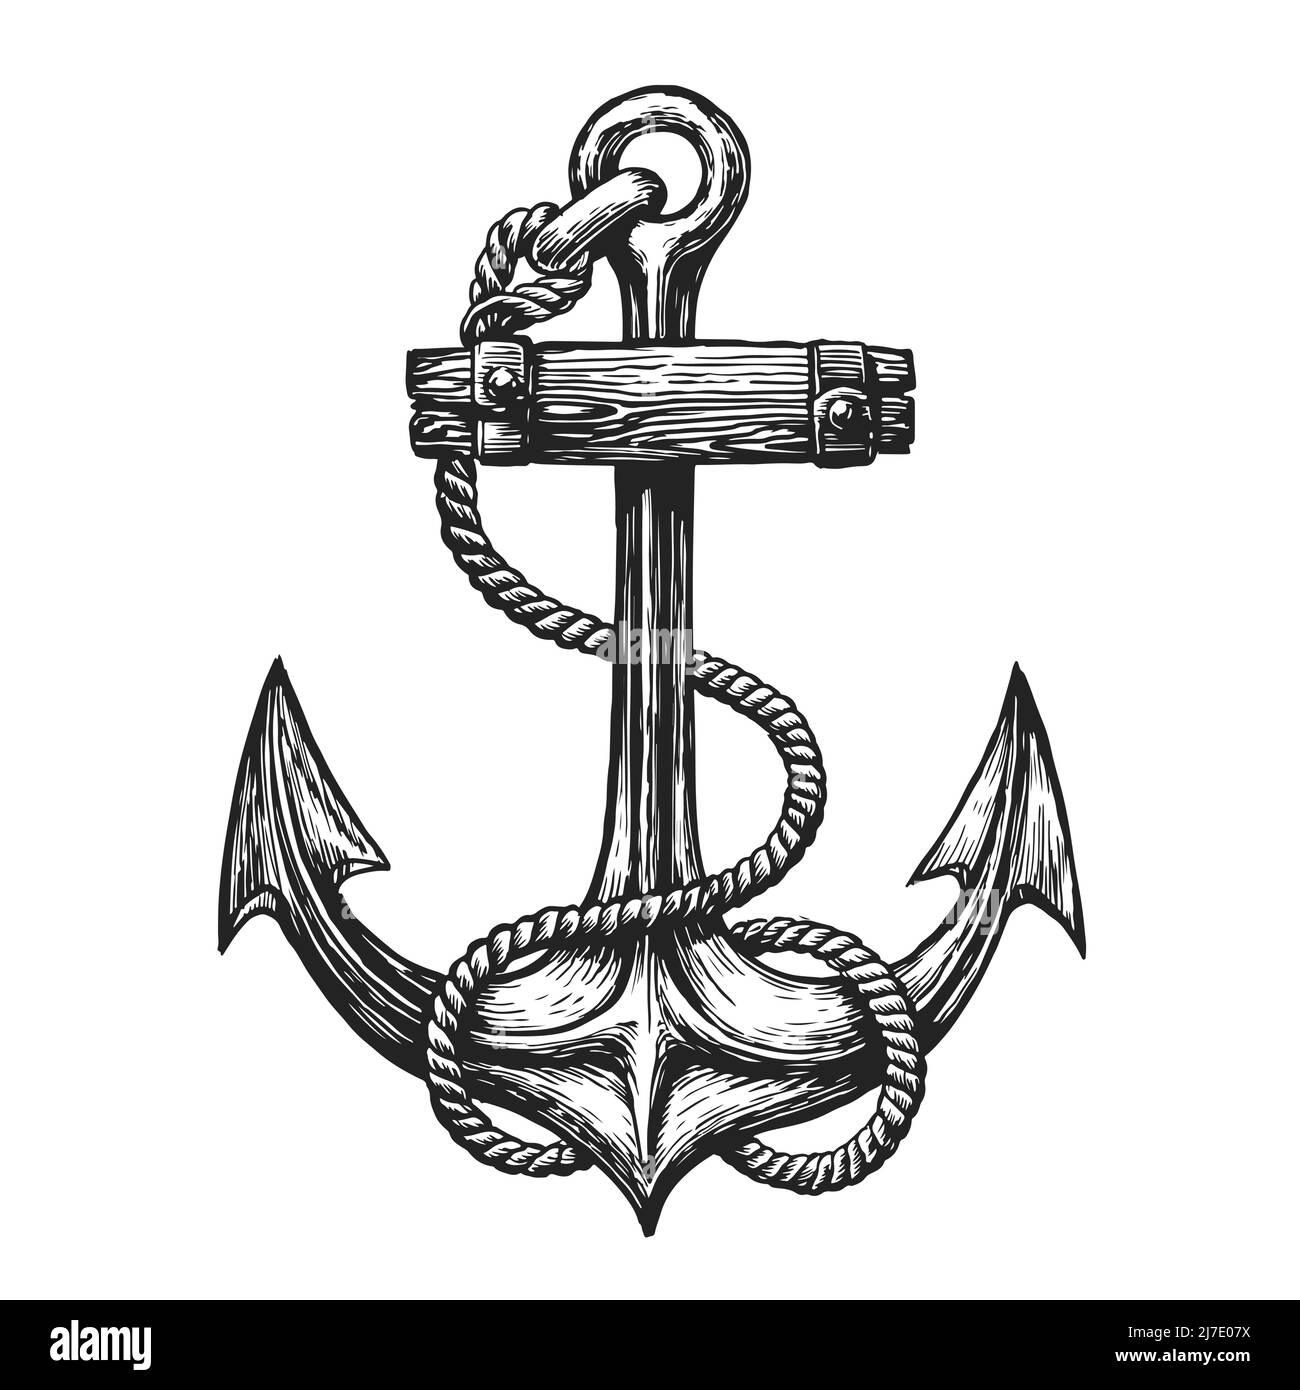 Vintage Anker mit Seil in Gravur-Stil gezeichnet. Handgezeichnetes Symbol für die Seefahrt. Vektorgrafik Stock Vektor